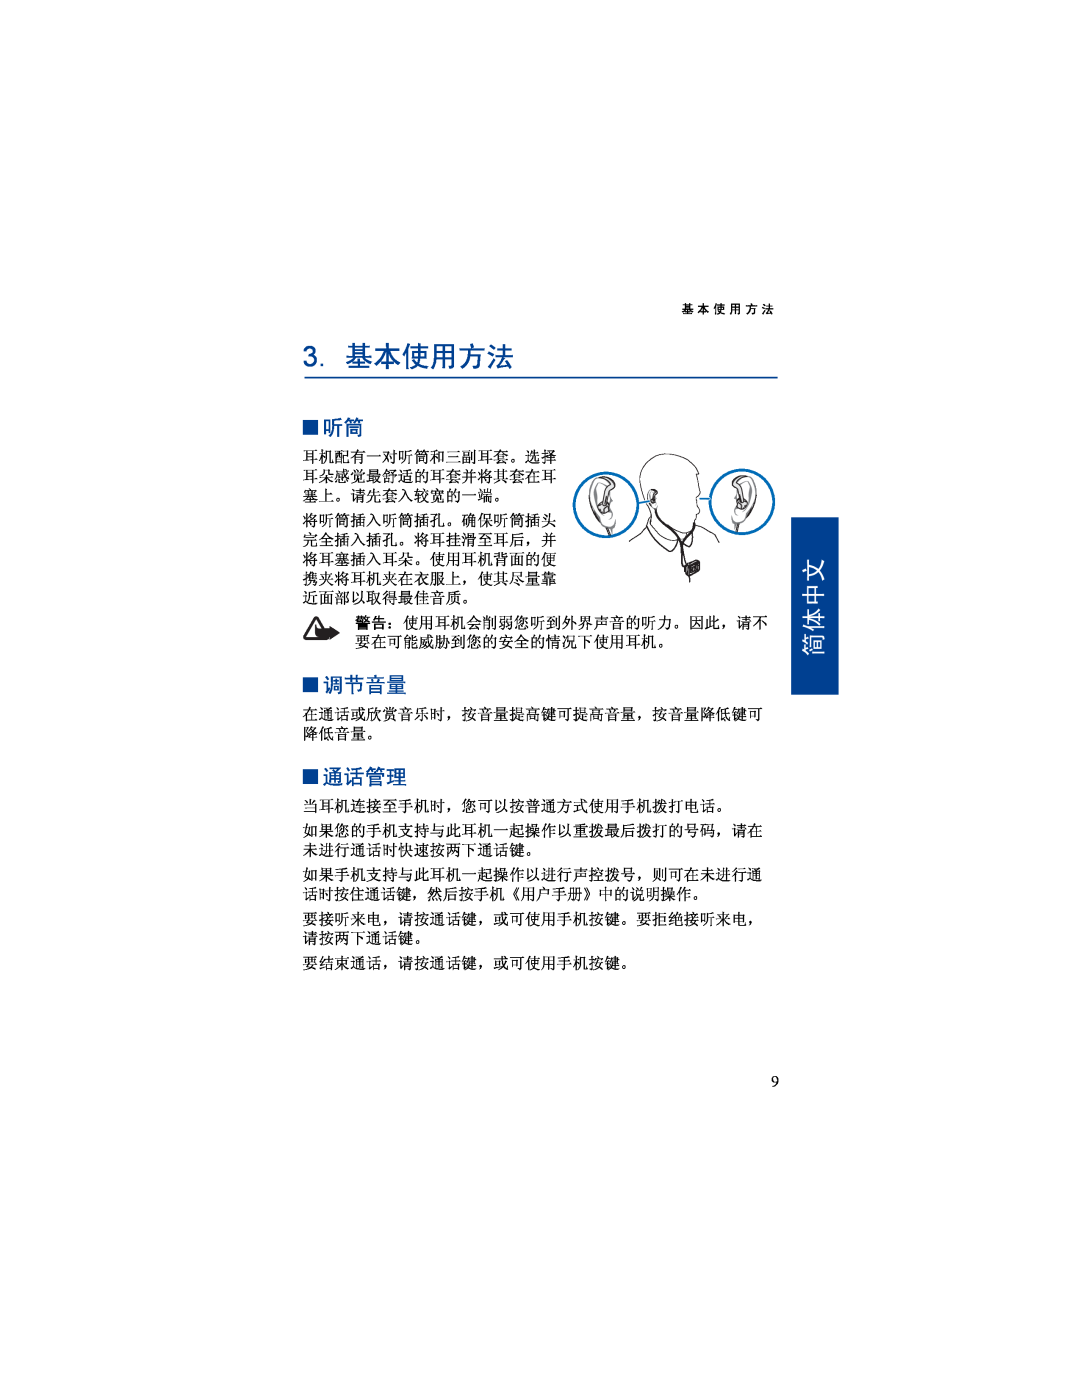 Nokia BH-500 manual 3.基本使用方法, 调节音量, 通话管理, 简体中文 